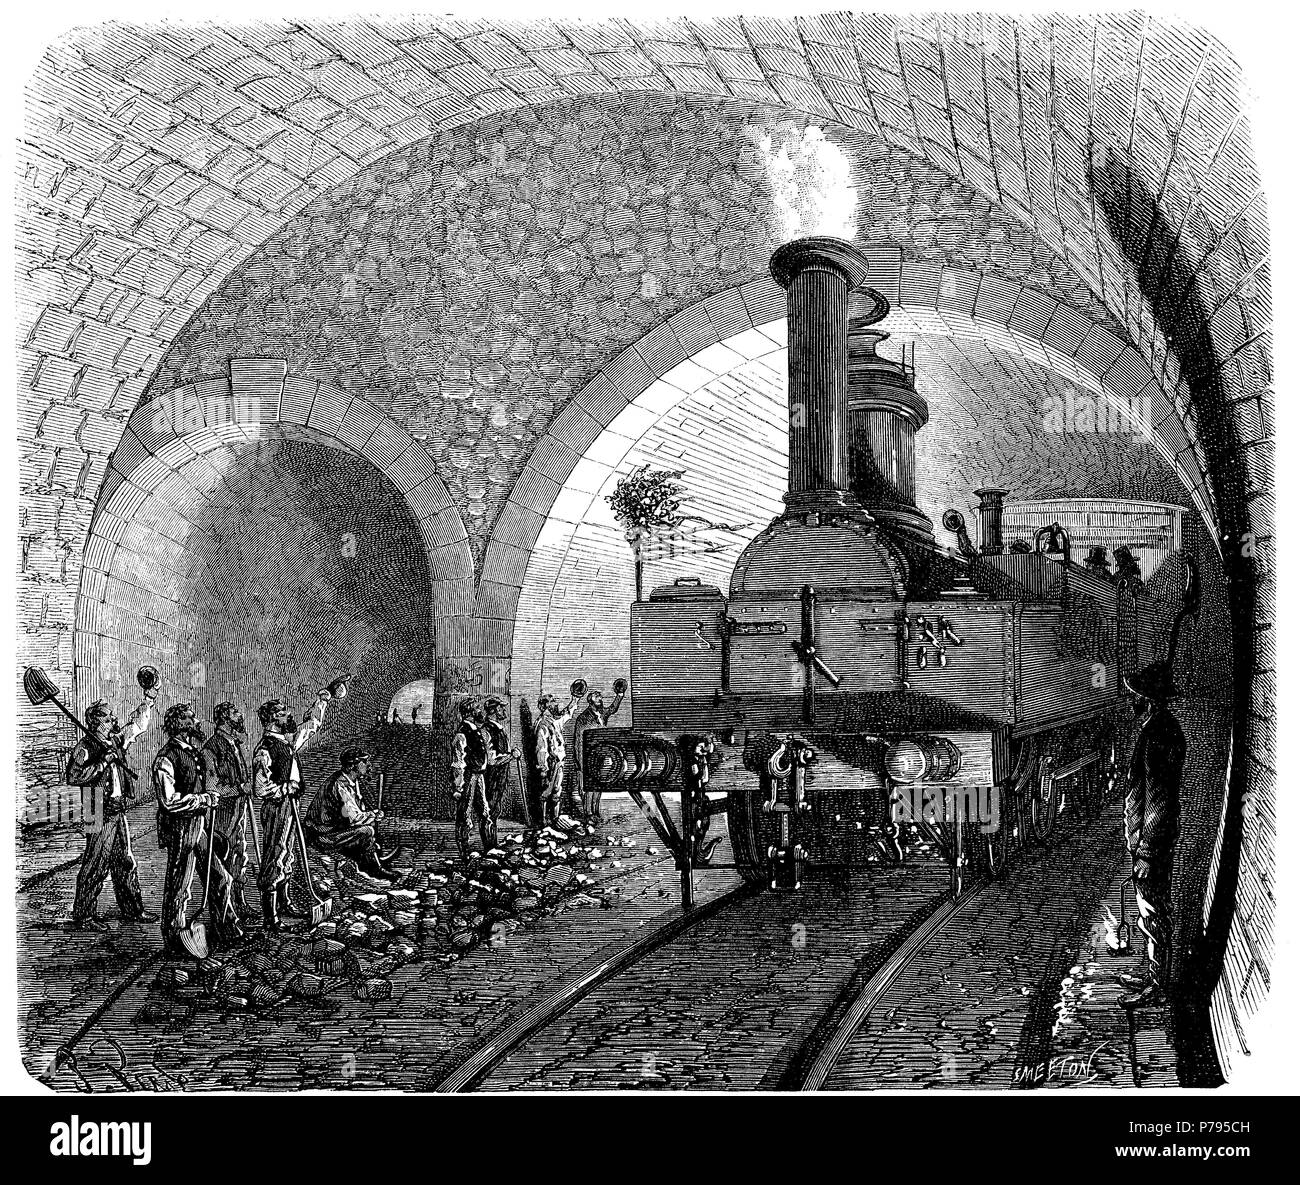 Apertura de los Alpes, paso de la primera locomotora por el Túnel de Mont Cenís, en la intersección de la galeria principal y el empalme, entre Francia e Italia, el día 7 de septiembre de 1871. Grabado de época. Stock Photo